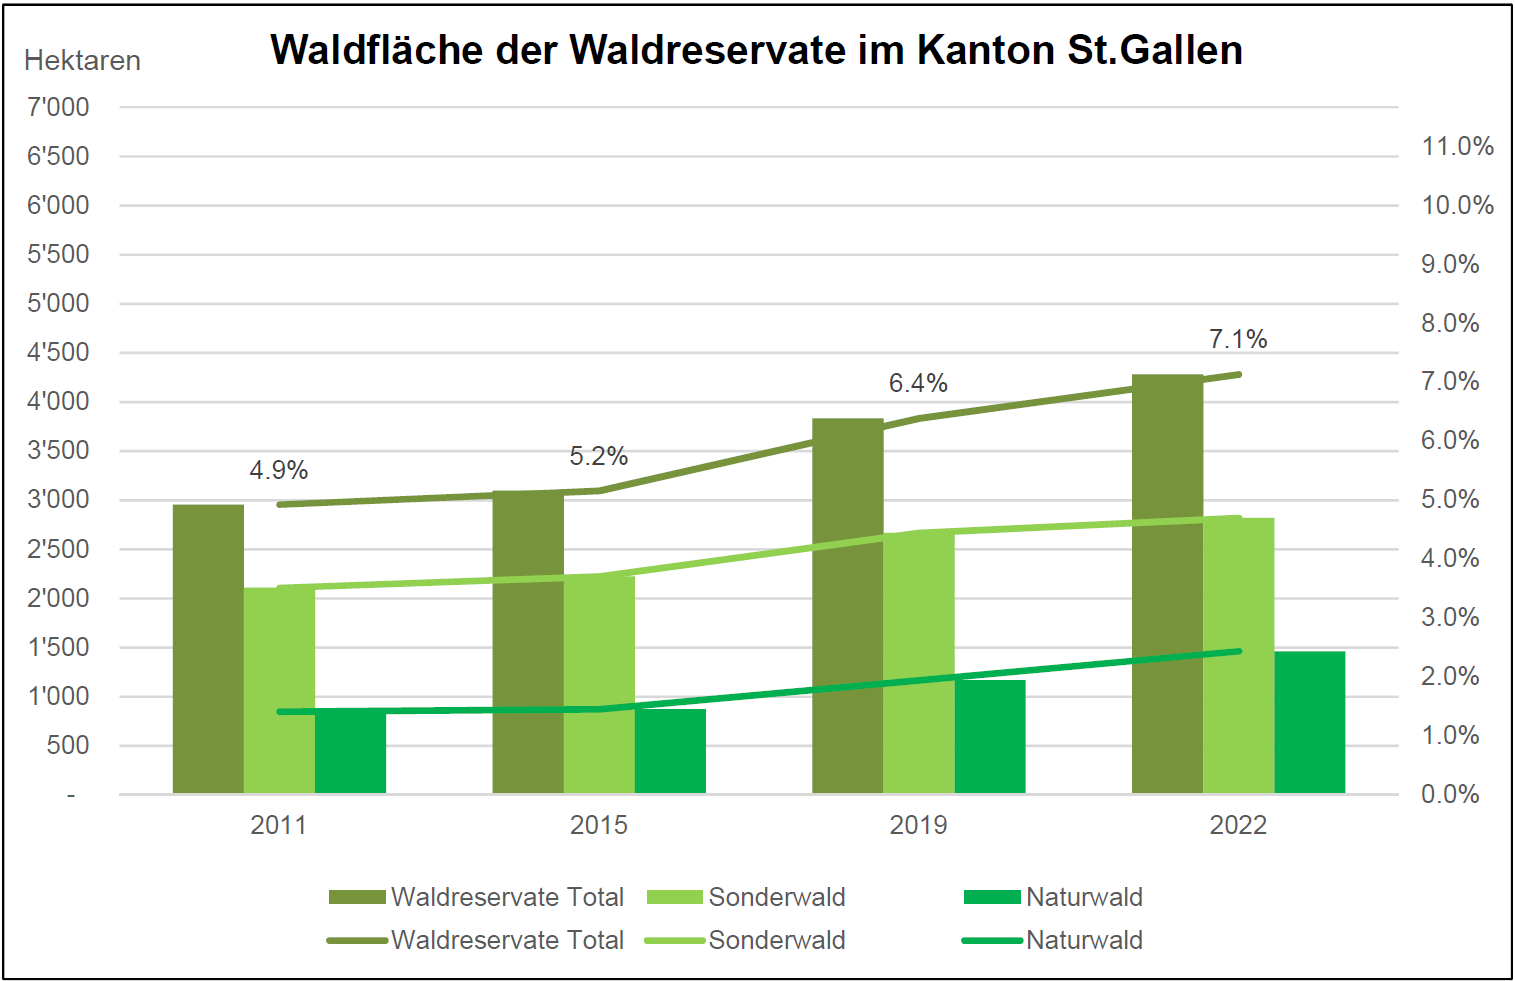 Die Zielerreichung der Waldreservatsfläche lag Ende 2019 bei rund 64 Prozent bzw. 6.4 Prozent der St.Galler Waldfläche.